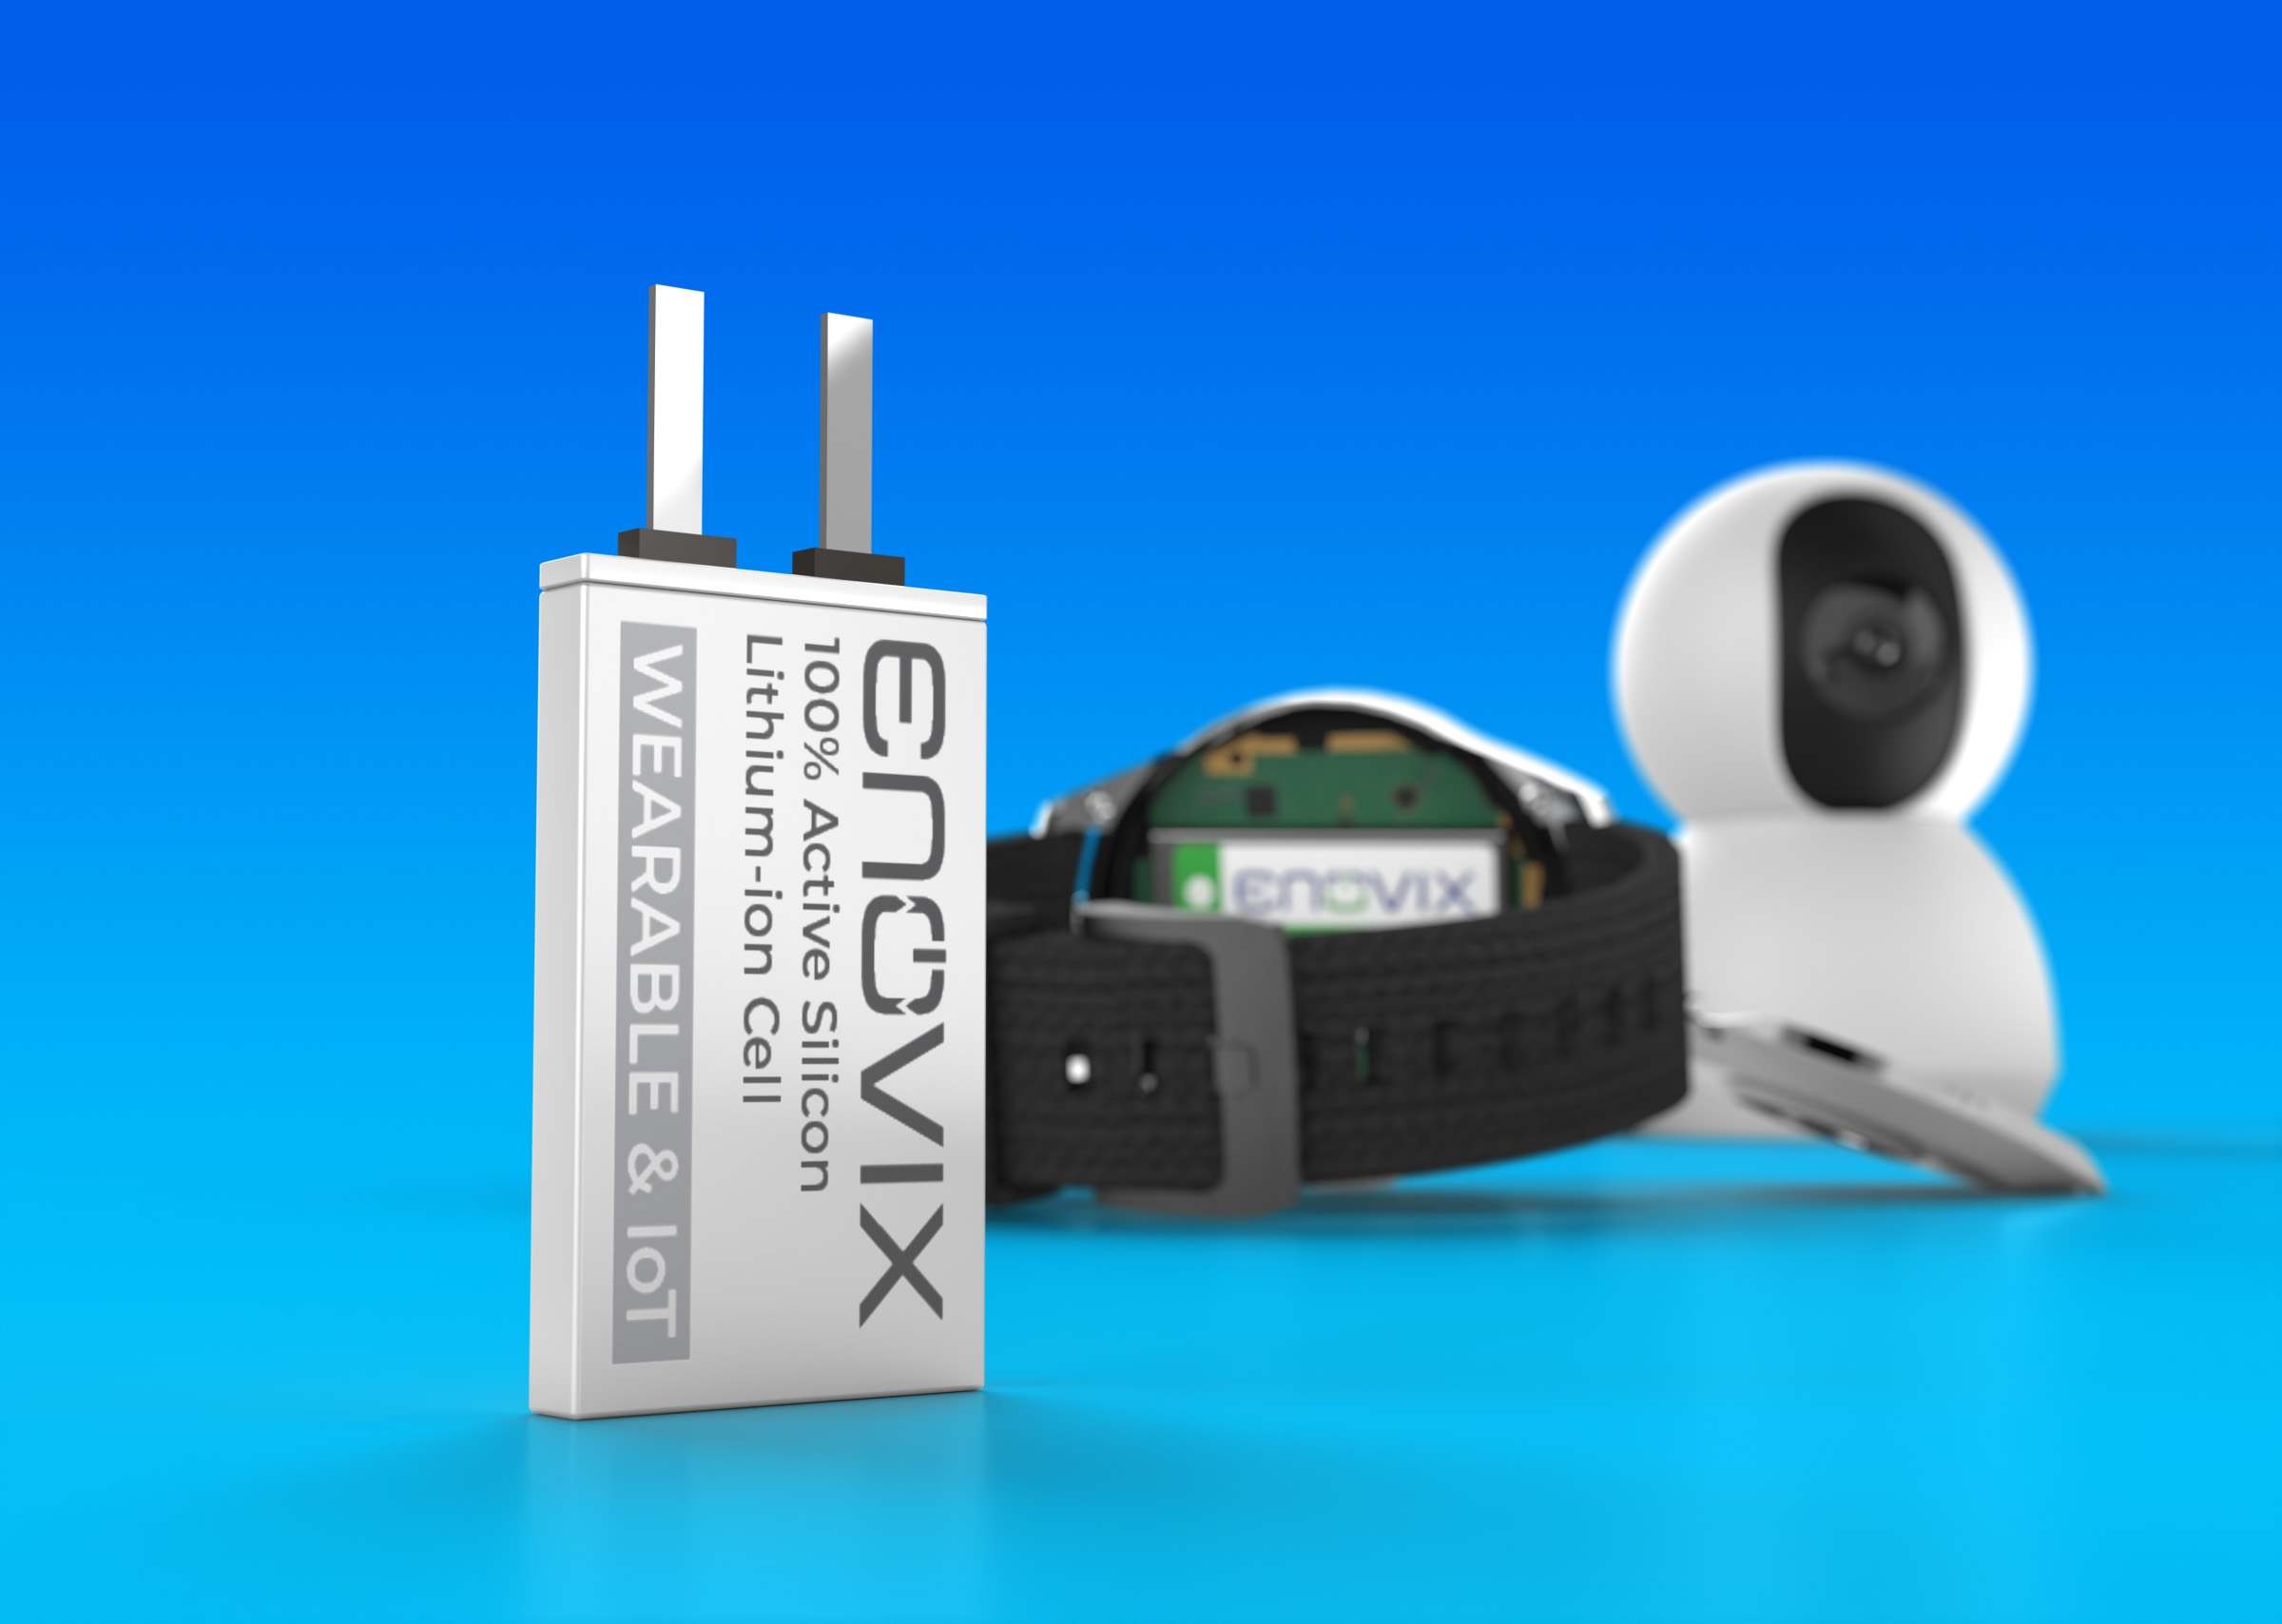 Enovix宣布其标准物联网及可穿戴设备电池全面上市.jpg